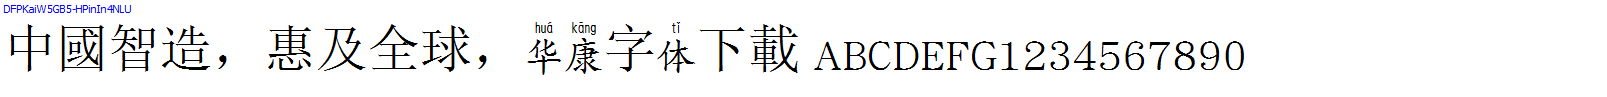 華康字體DFPKaiW5GB5-HPinIn4NLU.TTF